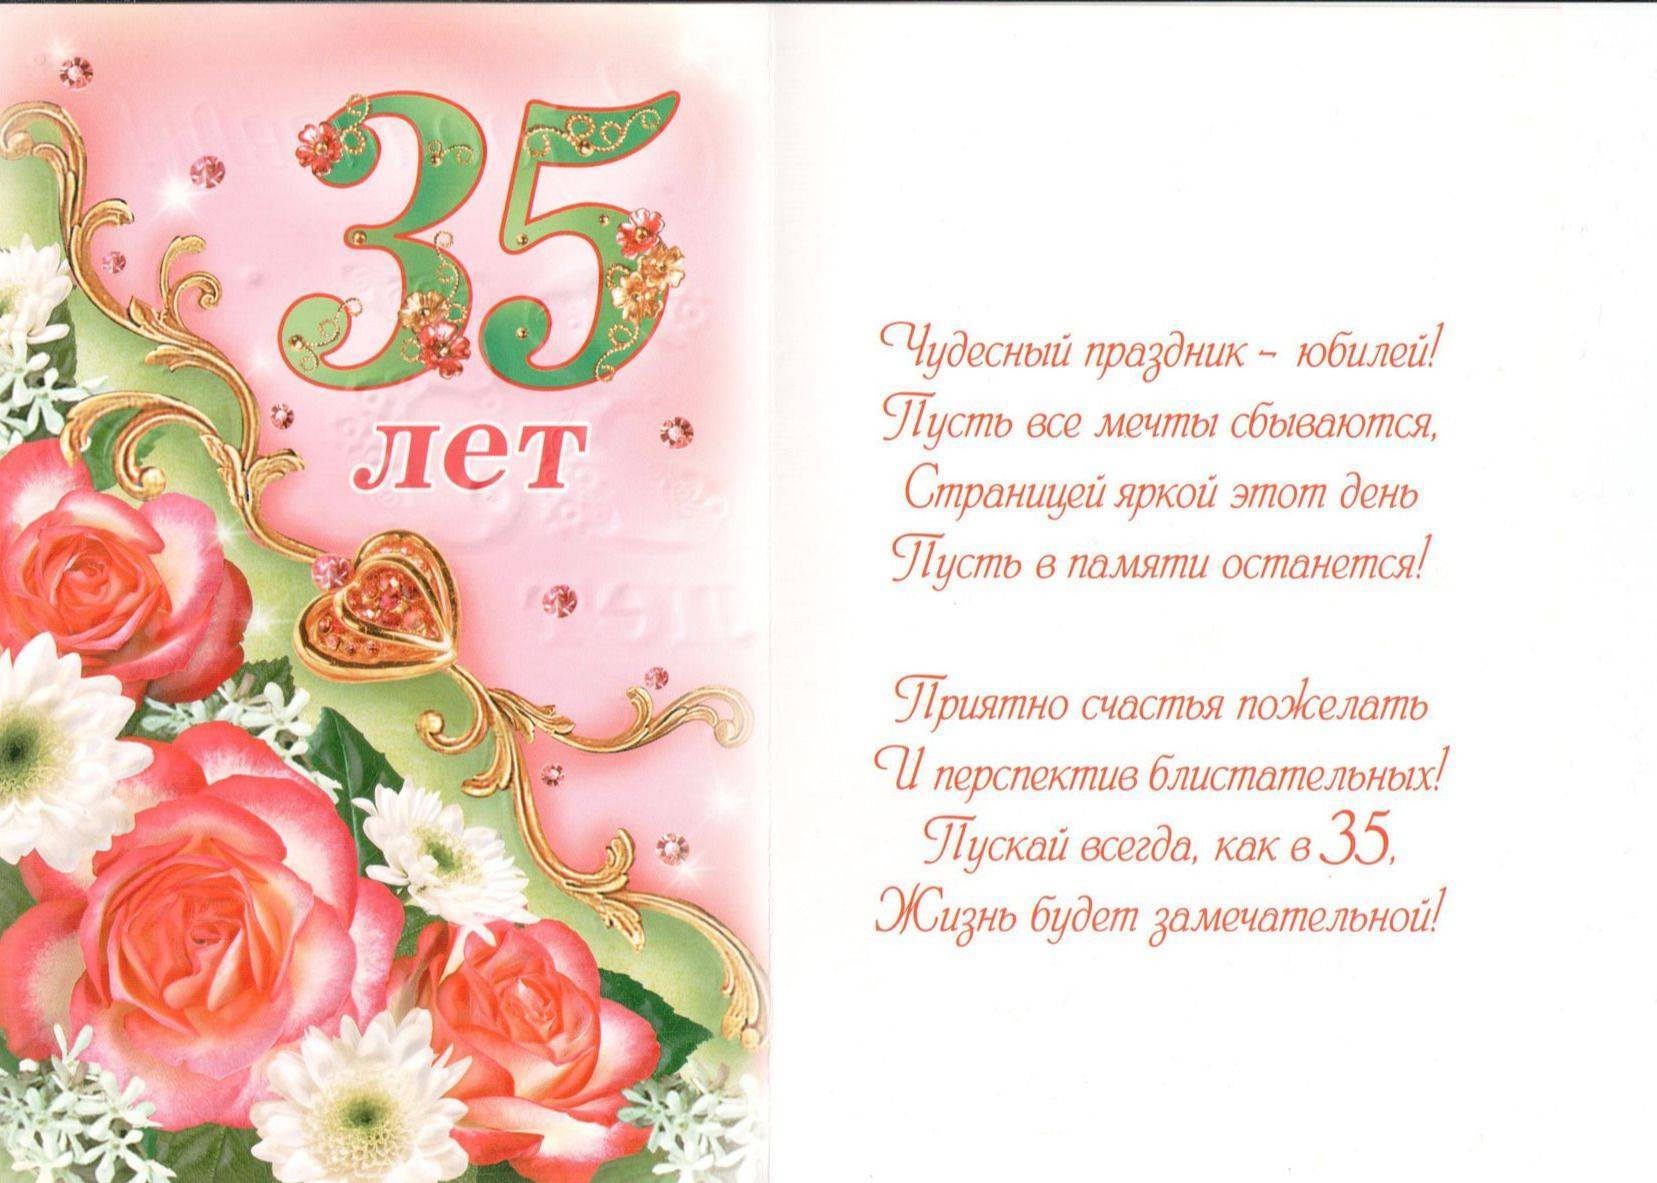 Поздравления с днем рождения 35 лет девушке • полный список поздравлений и пожеланий на любой праздник или торжество